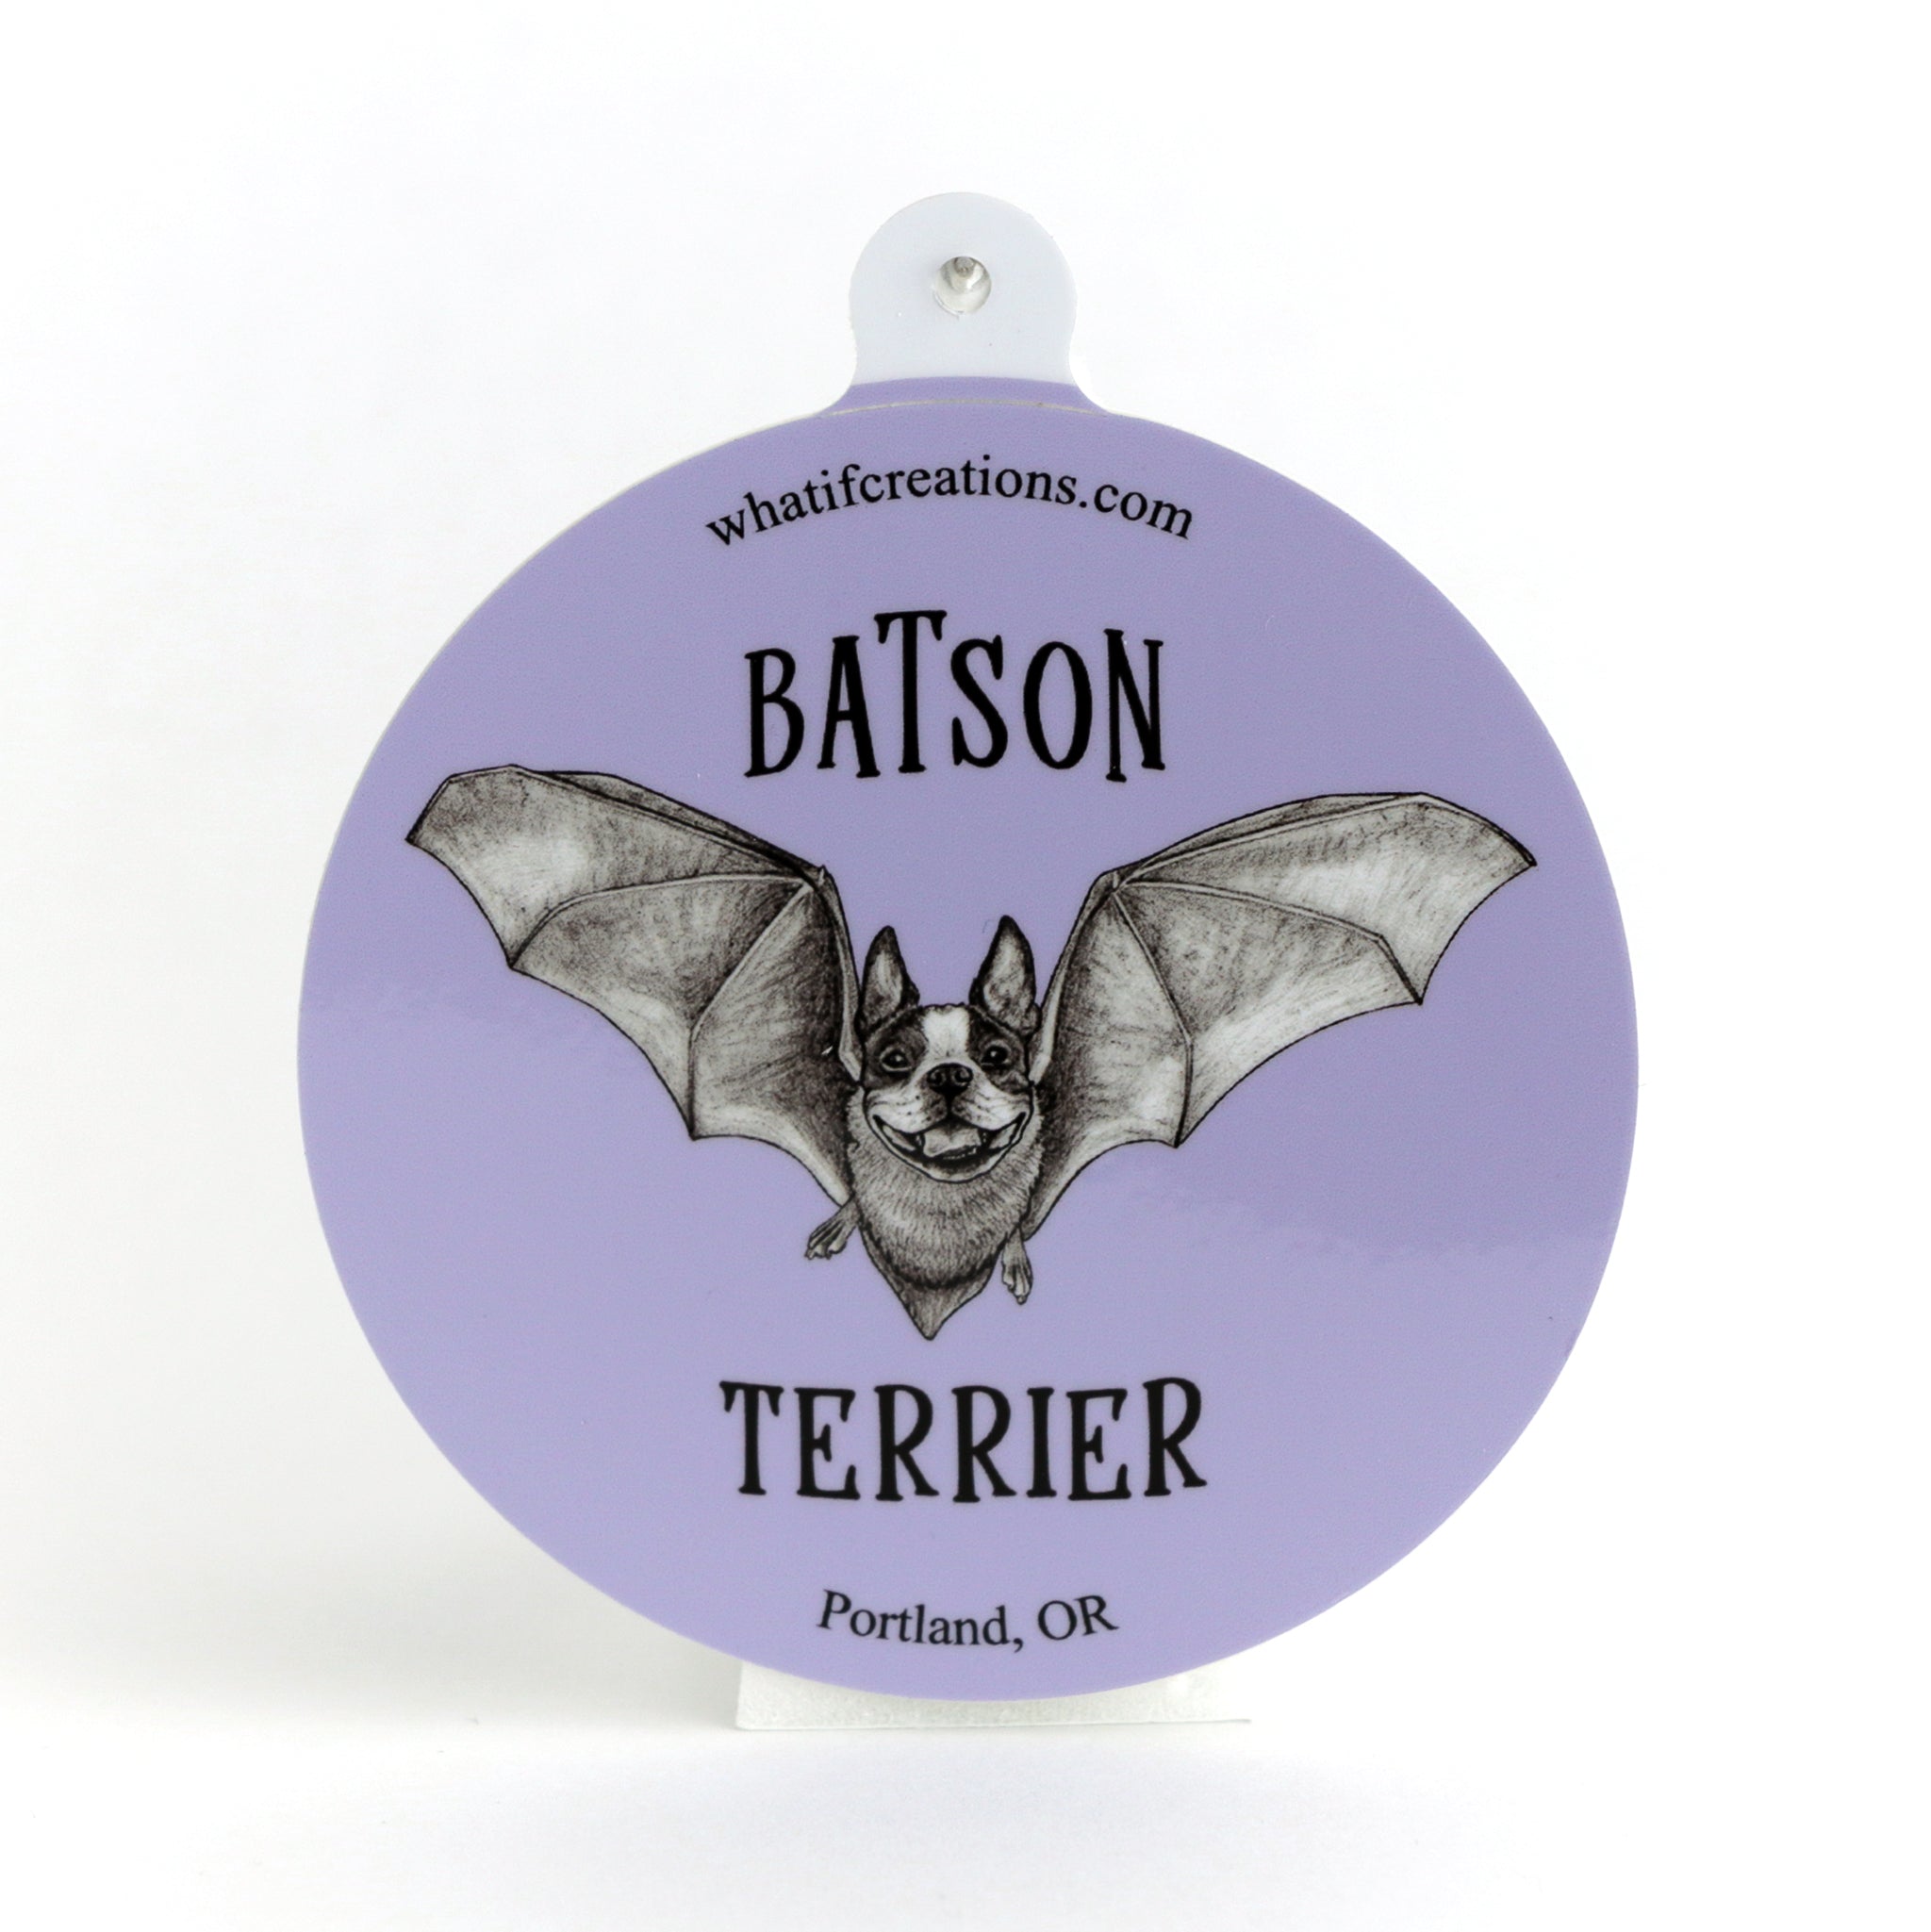 Batson Terrier | Boston Terrier + Bat Hybrid Animal | 3" Vinyl Sticker